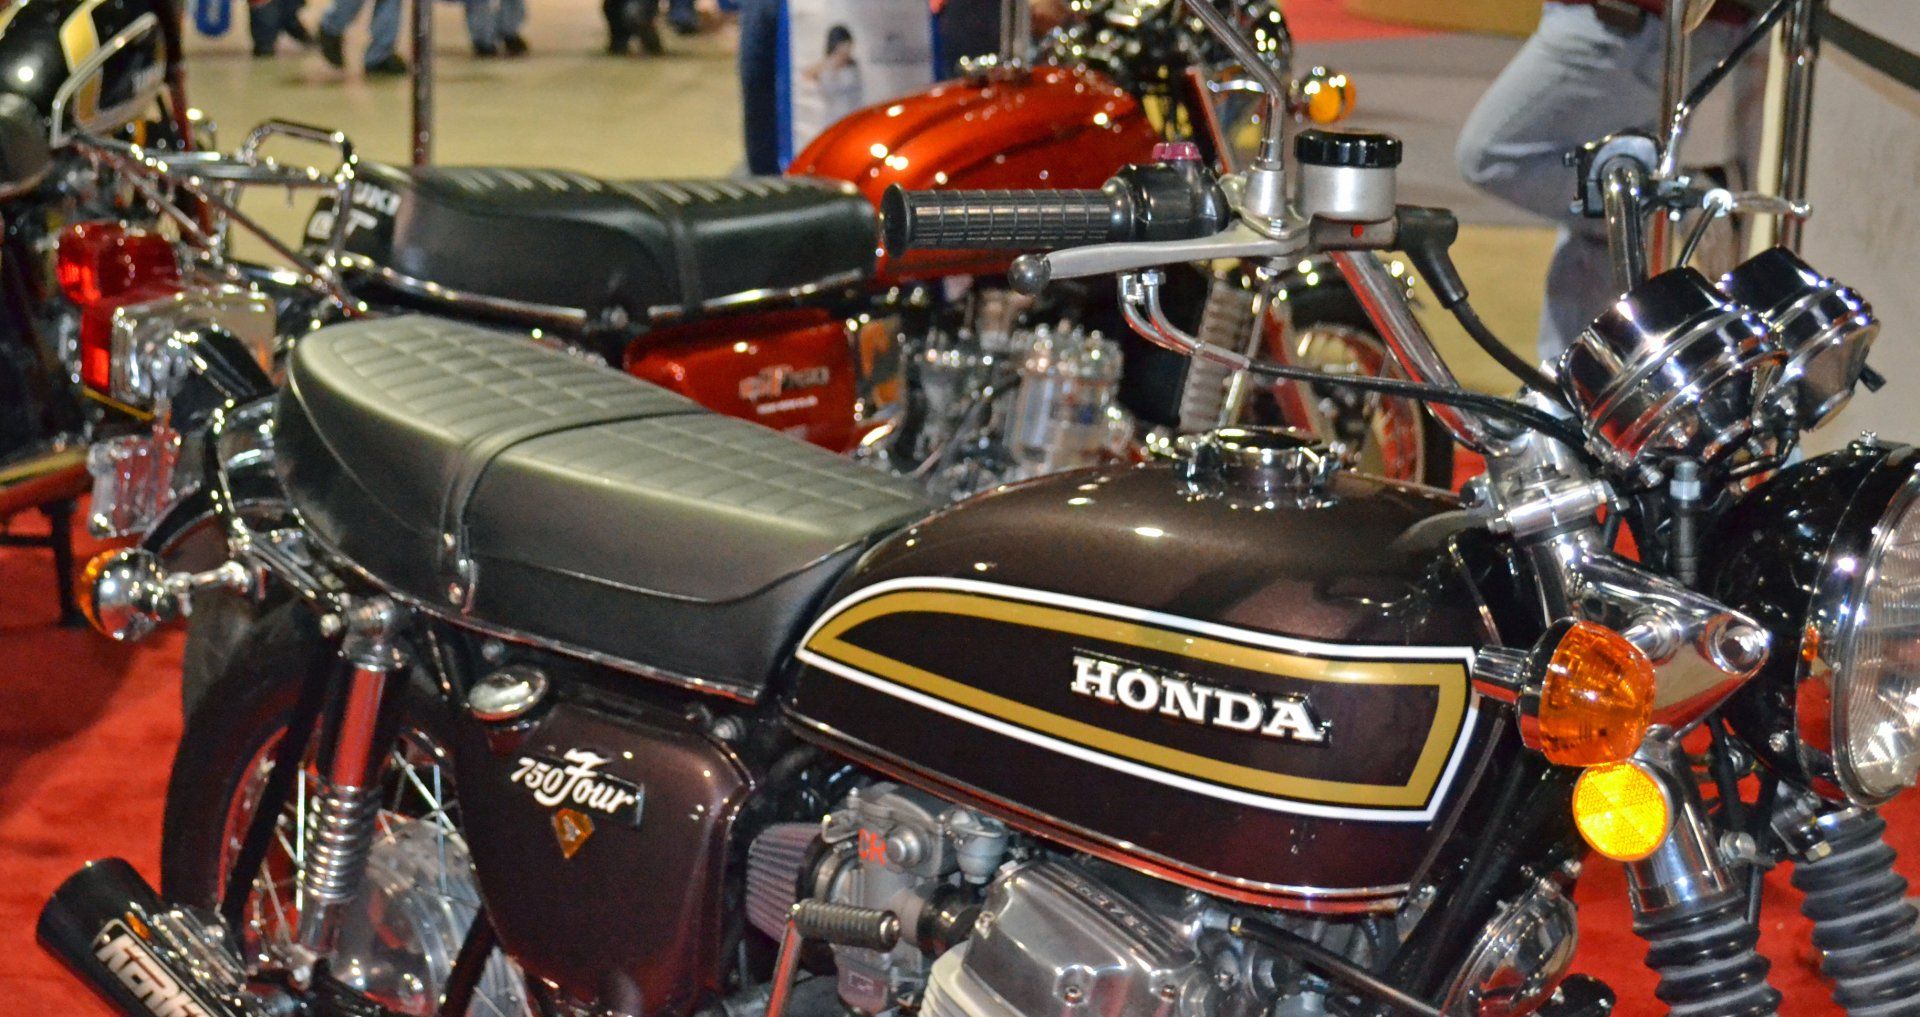 The Honda CB750 Four fully restored